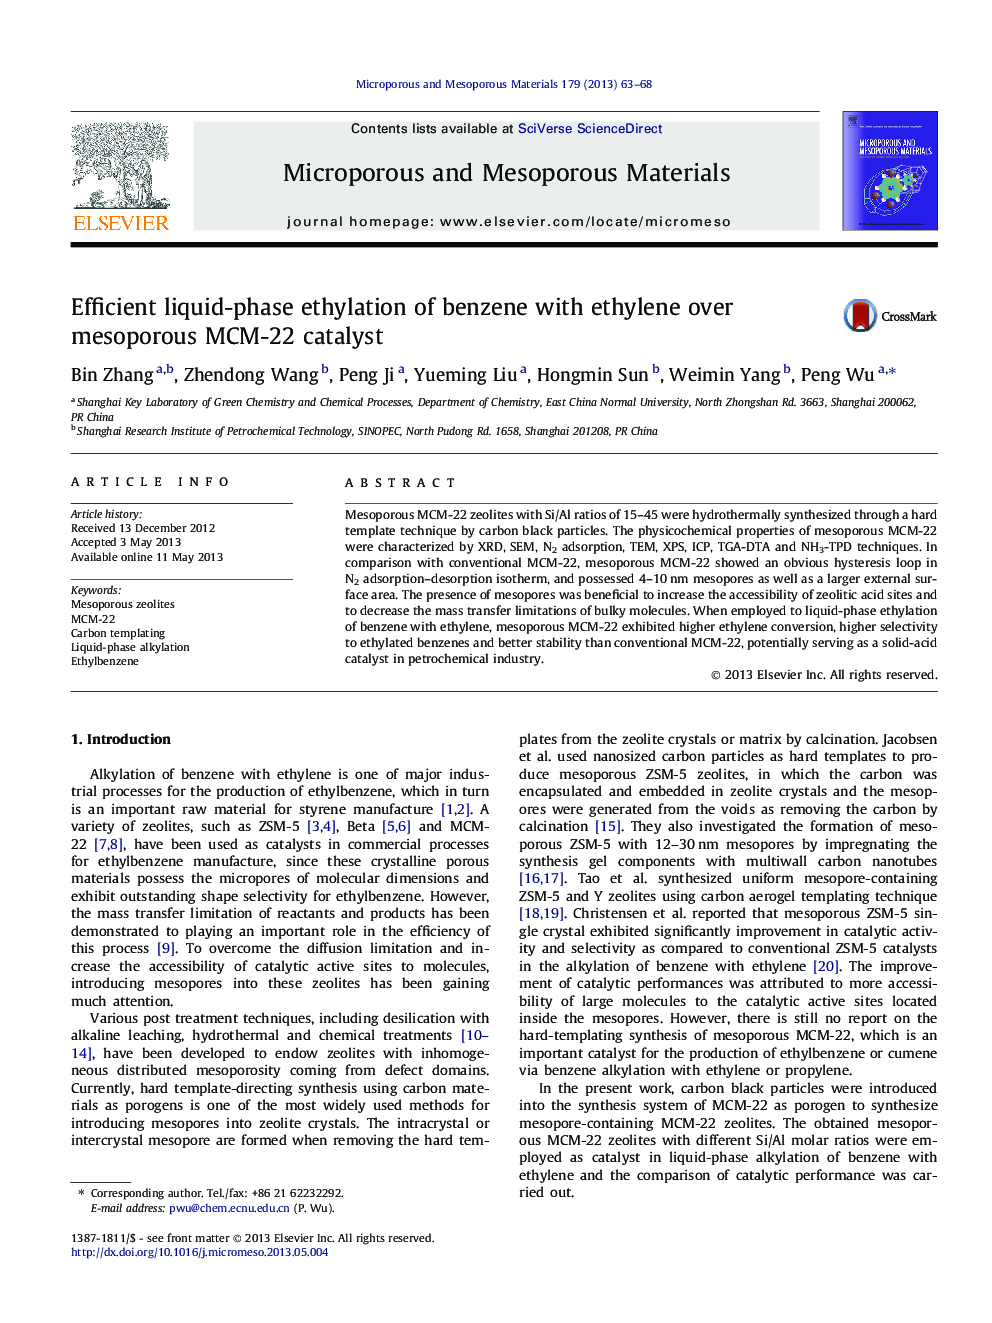 Efficient liquid-phase ethylation of benzene with ethylene over mesoporous MCM-22 catalyst